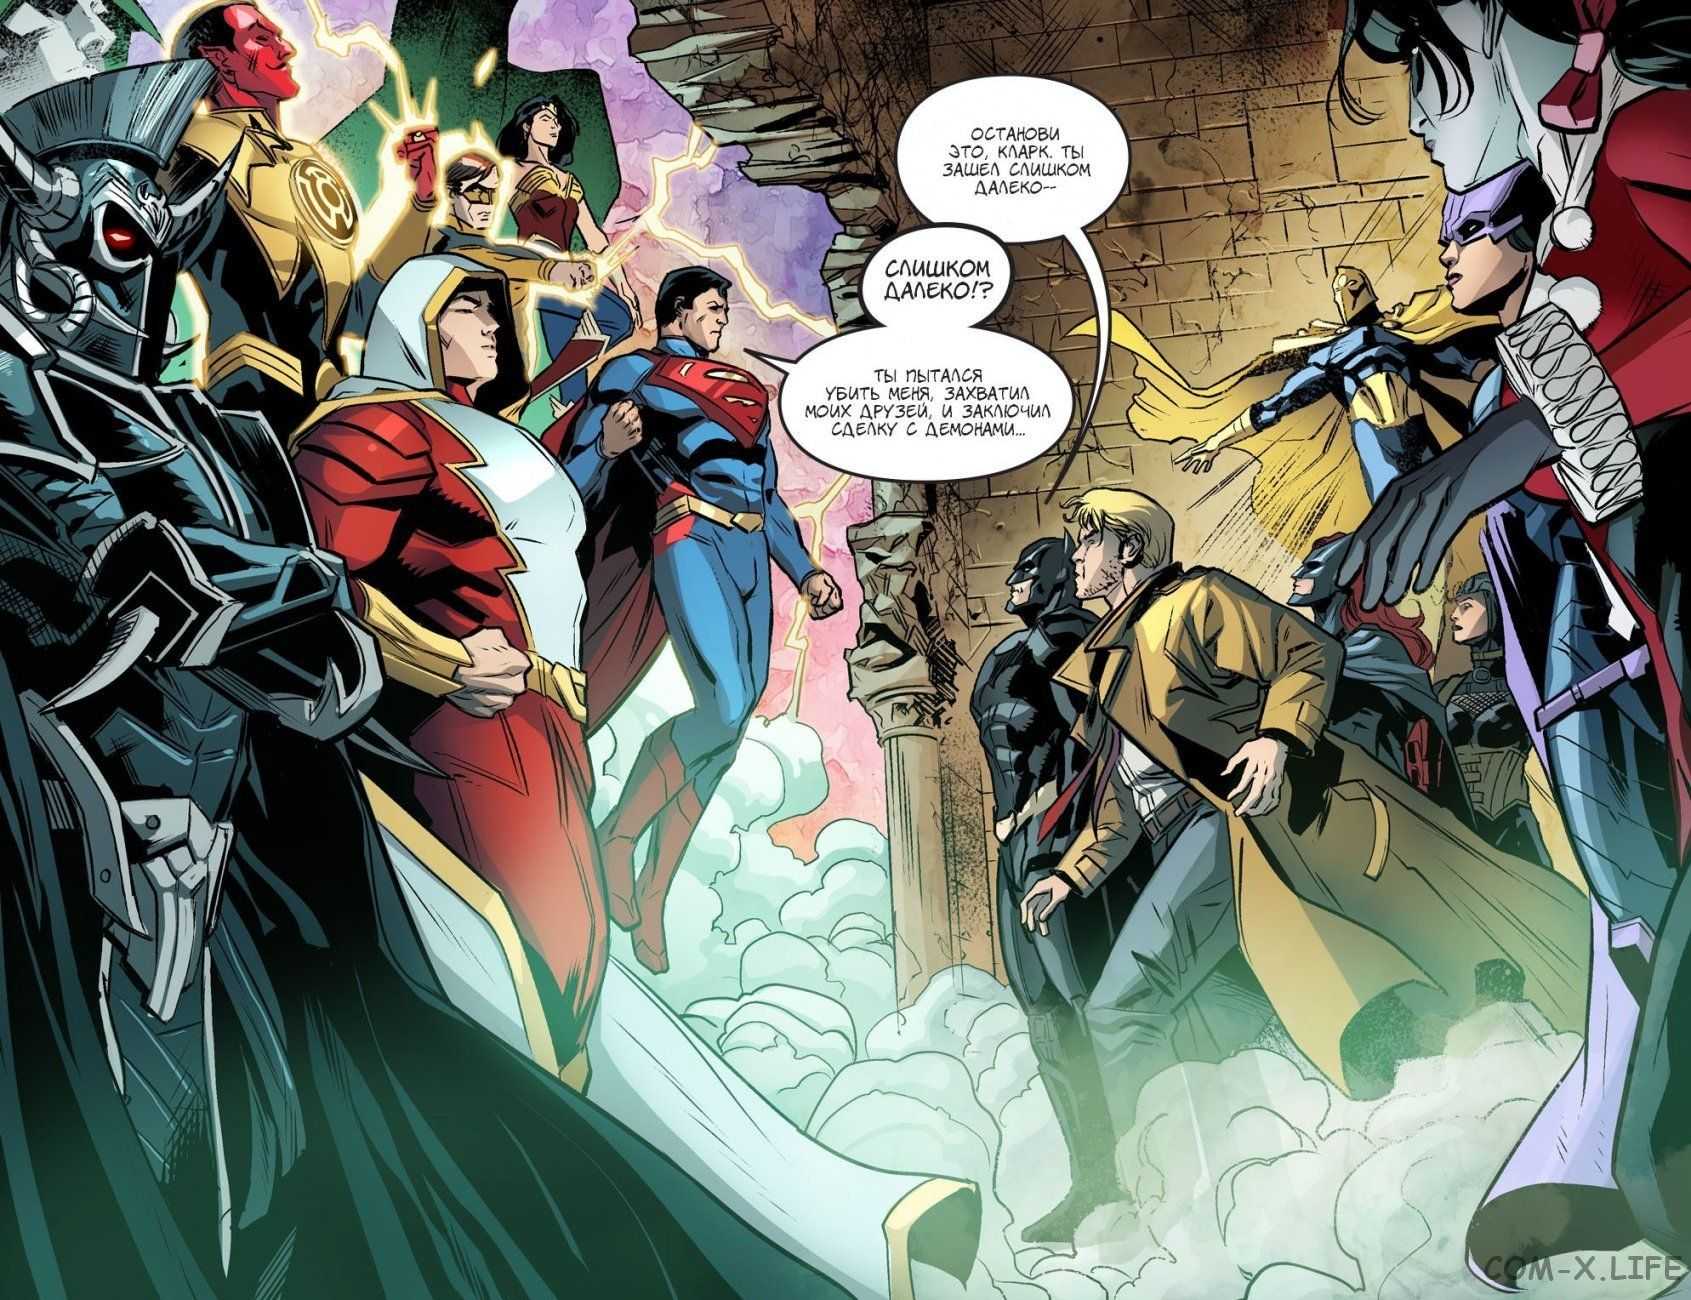 История персонажа джокера из dc comics - появление, противостояние с бэтменом и отношения с харли квинн